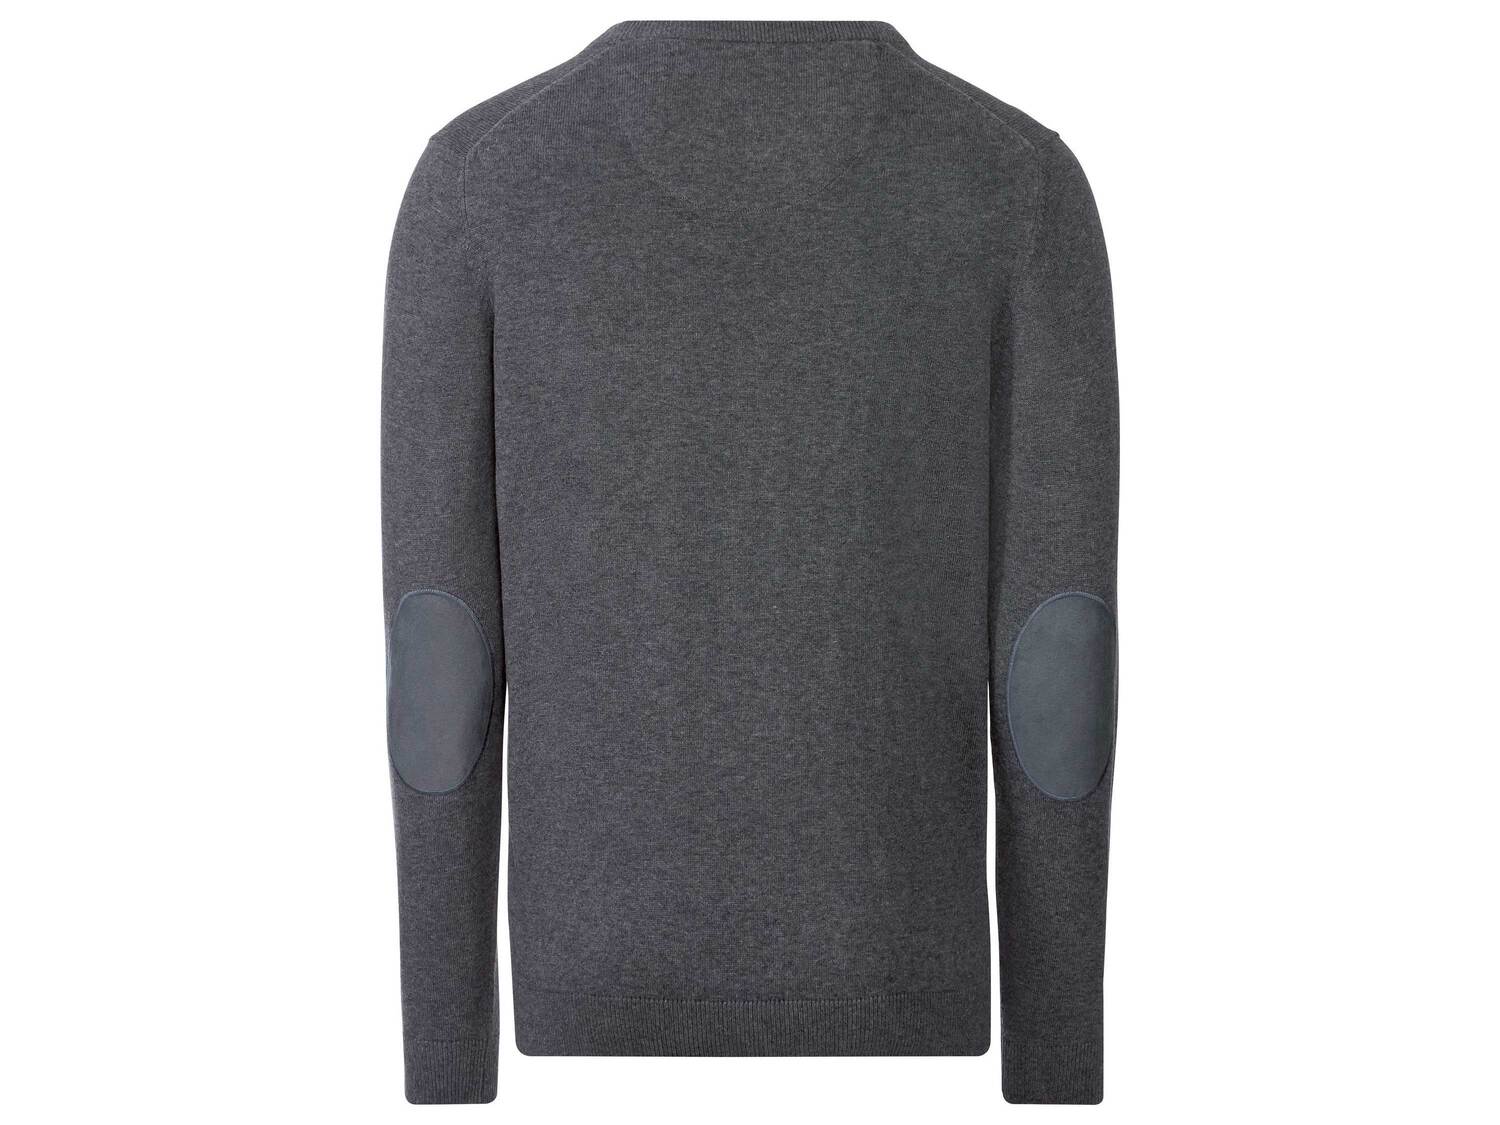 Sweter męski , cena 34,99 PLN 
- 100% bawełny
- rozmiary: M-XL
Dostępne rozmiary

Opis

- ...